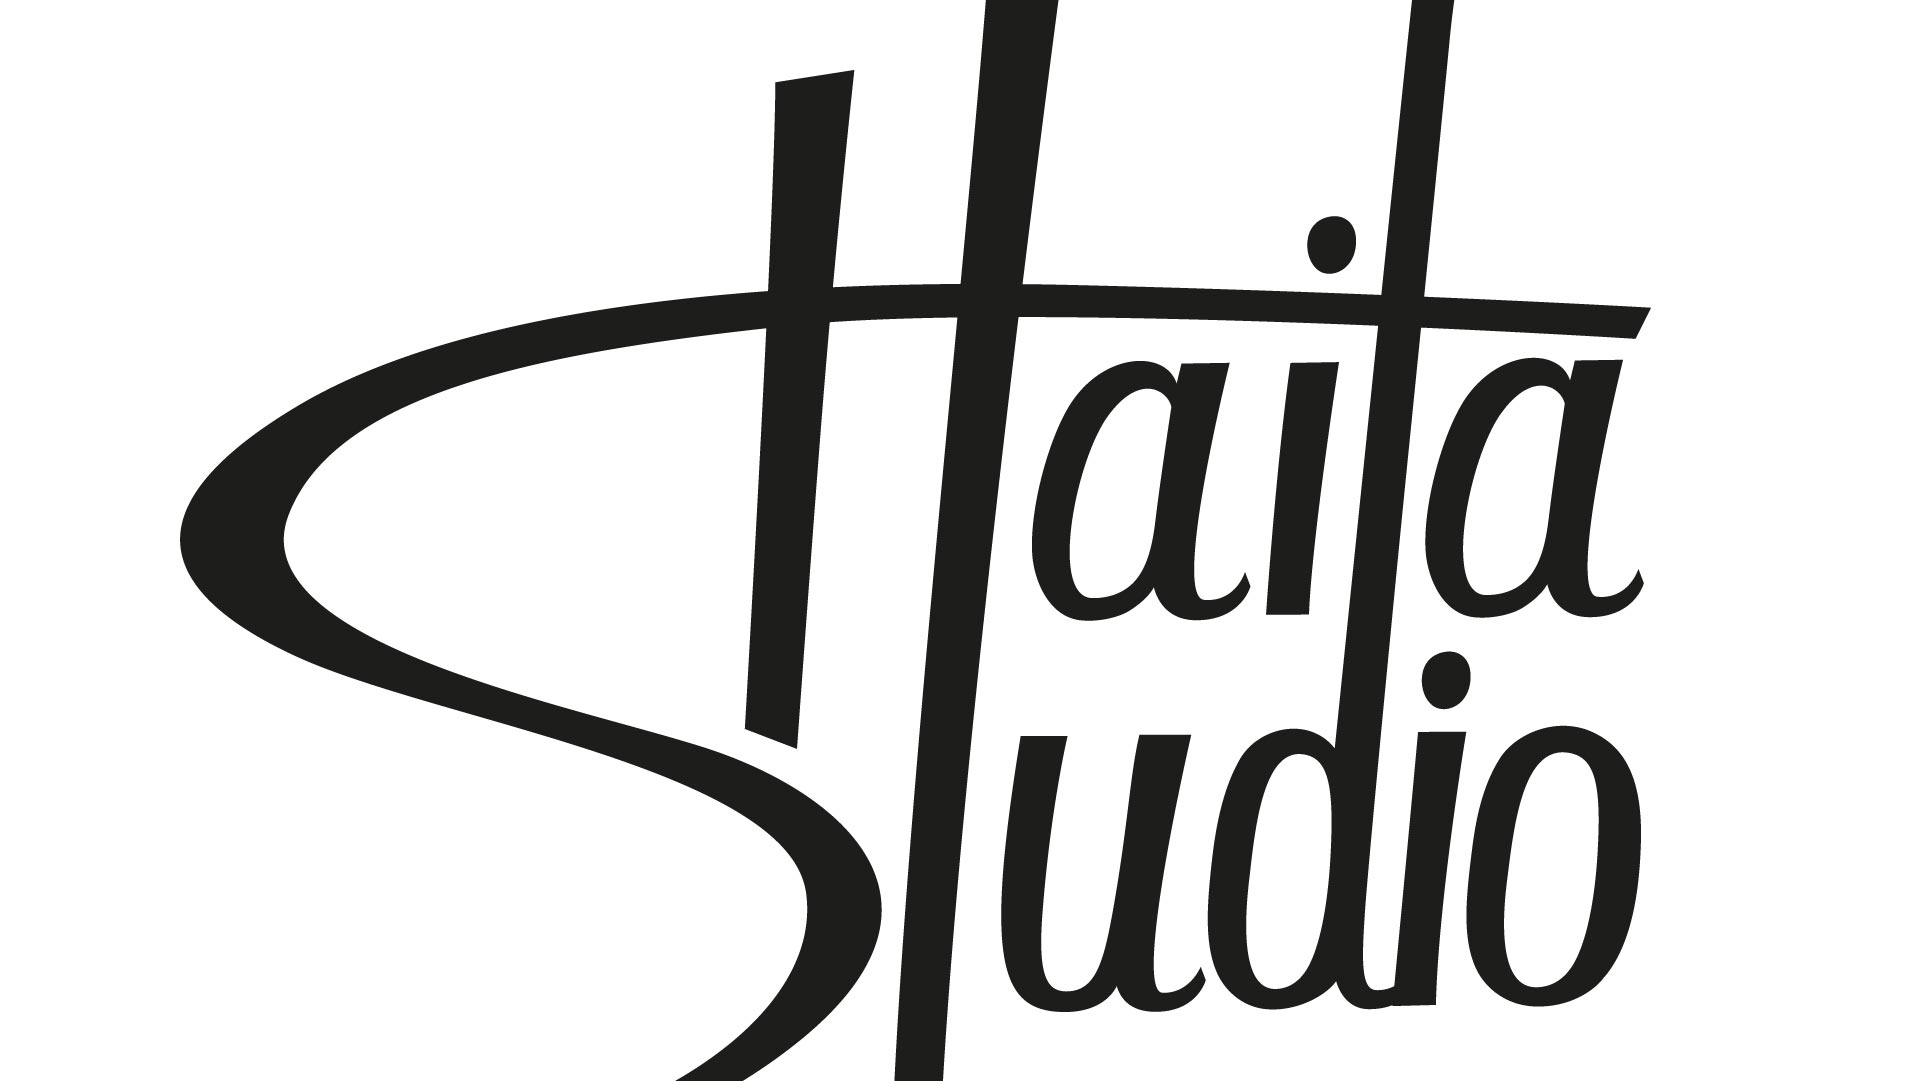 Haifa Studio